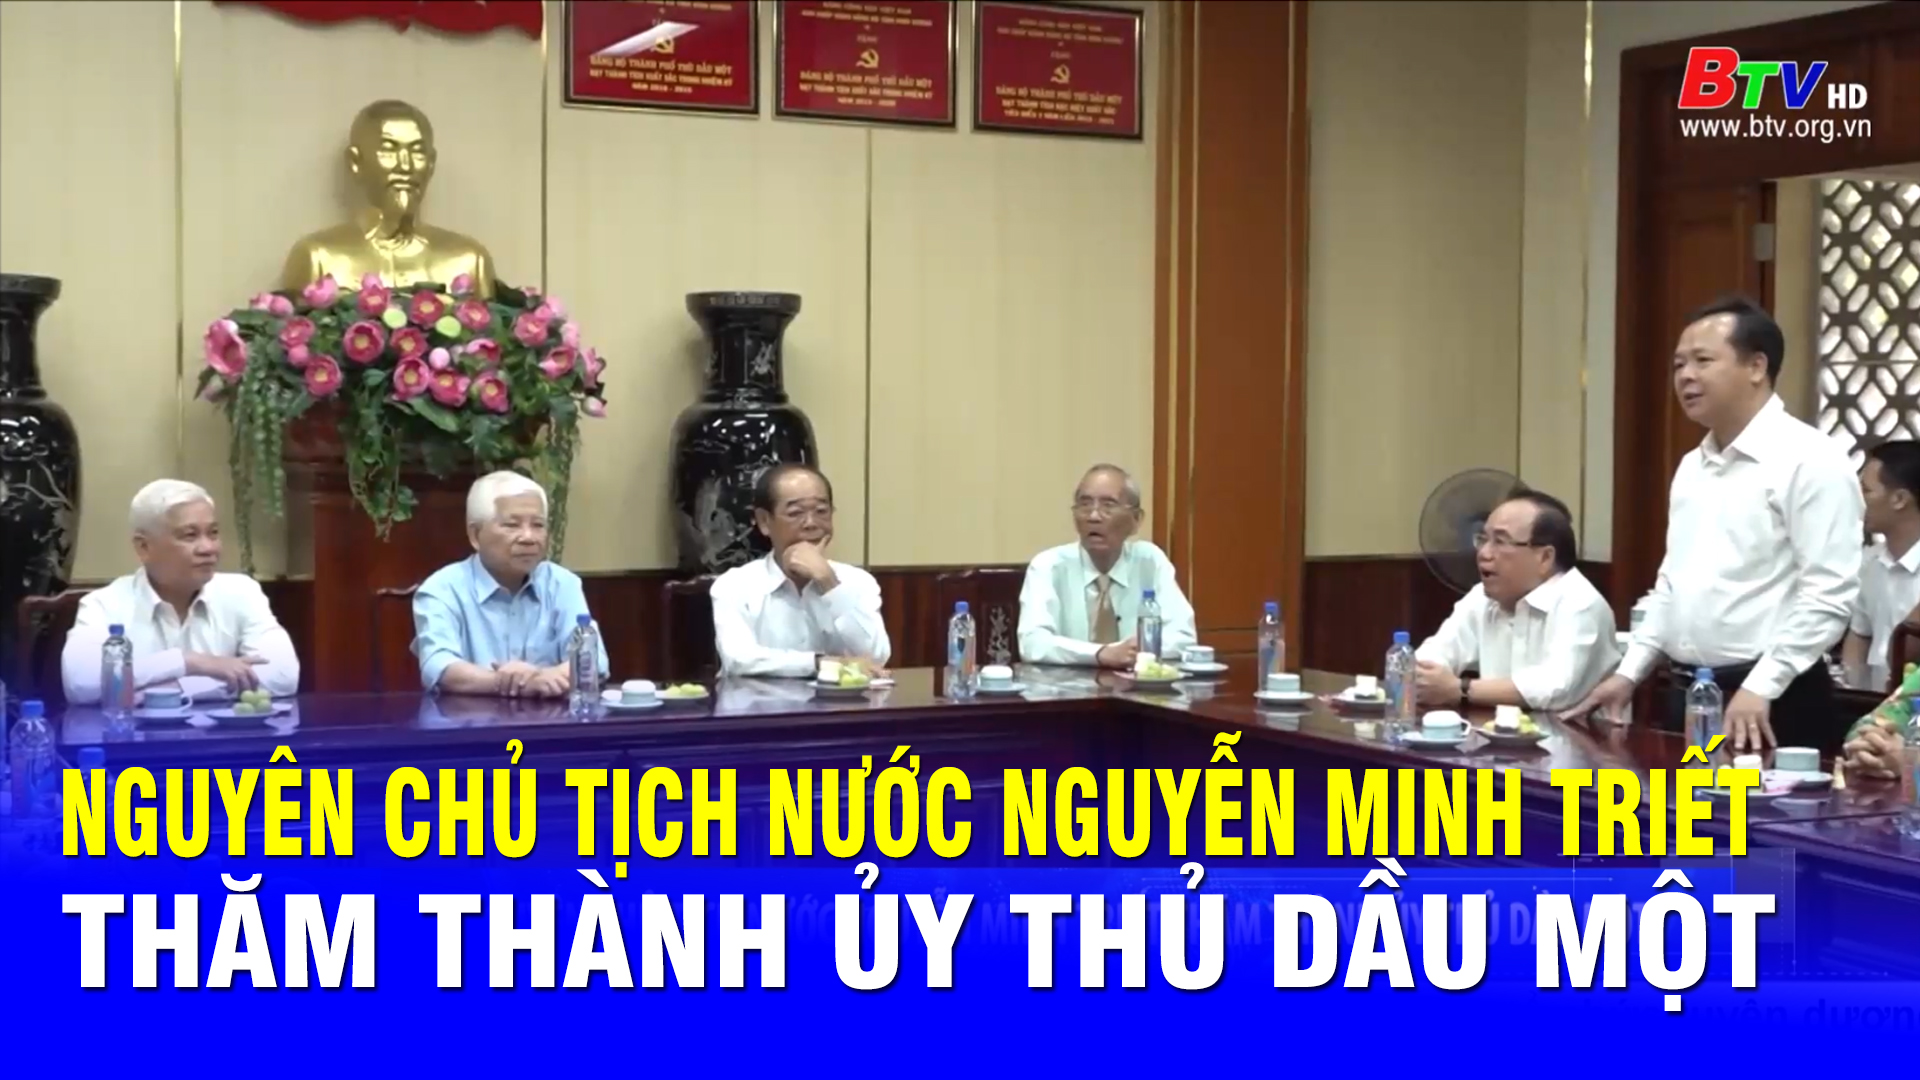 Nguyên Chủ tịch nước Nguyễn Minh Triết thăm Thành ủy Thủ Dầu Một